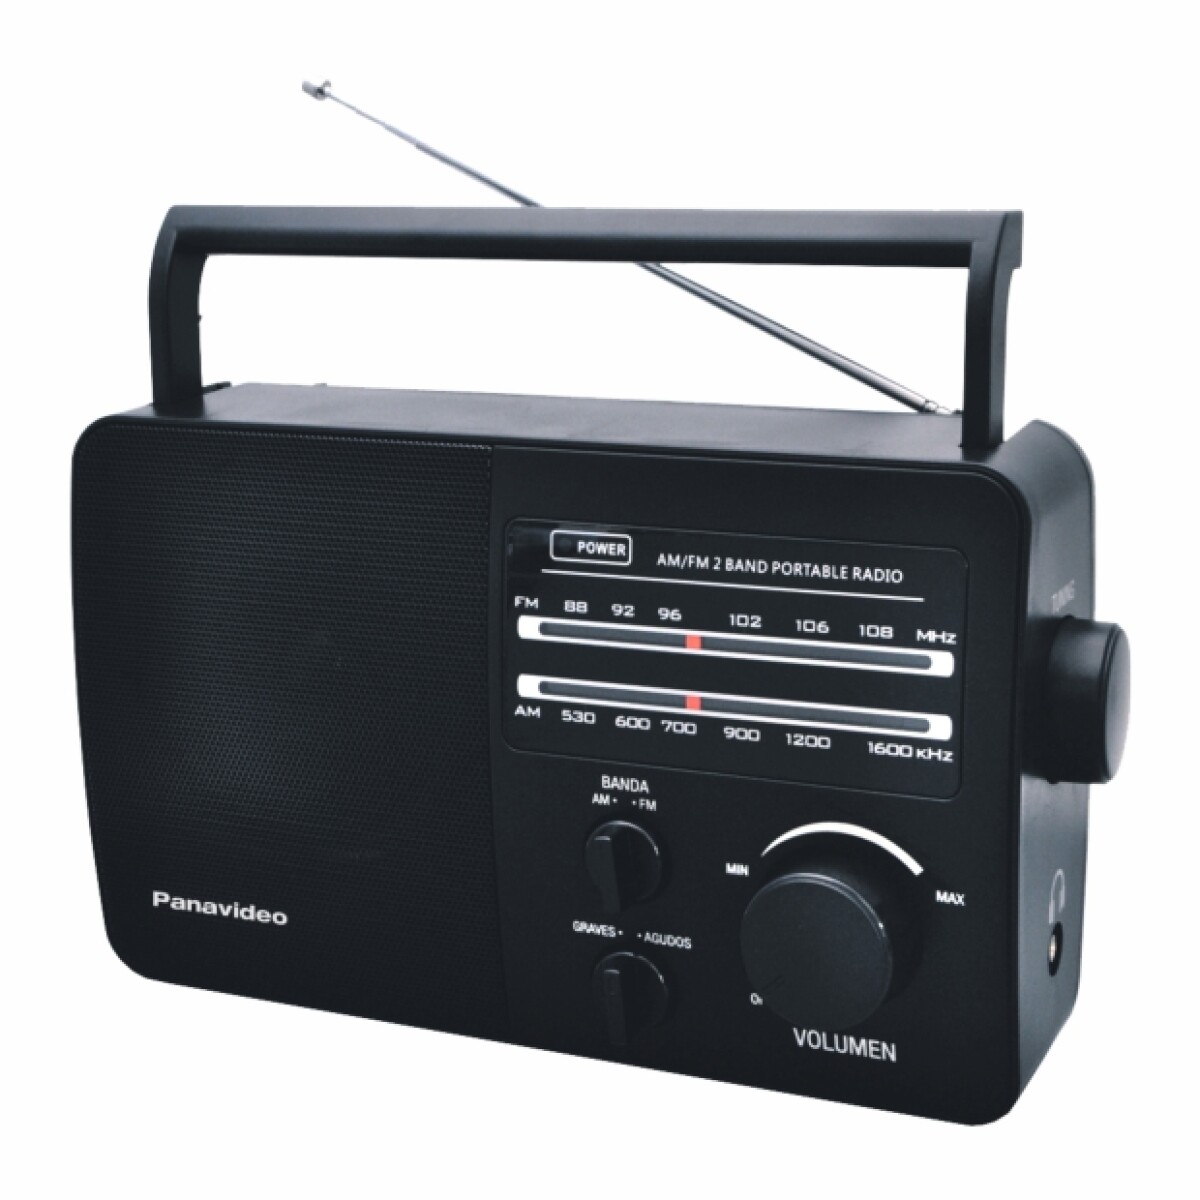 RADIO A CORRIENTE O PILA AM FM PANAVIDEO GARANTIA PUNKTAL - 5606 